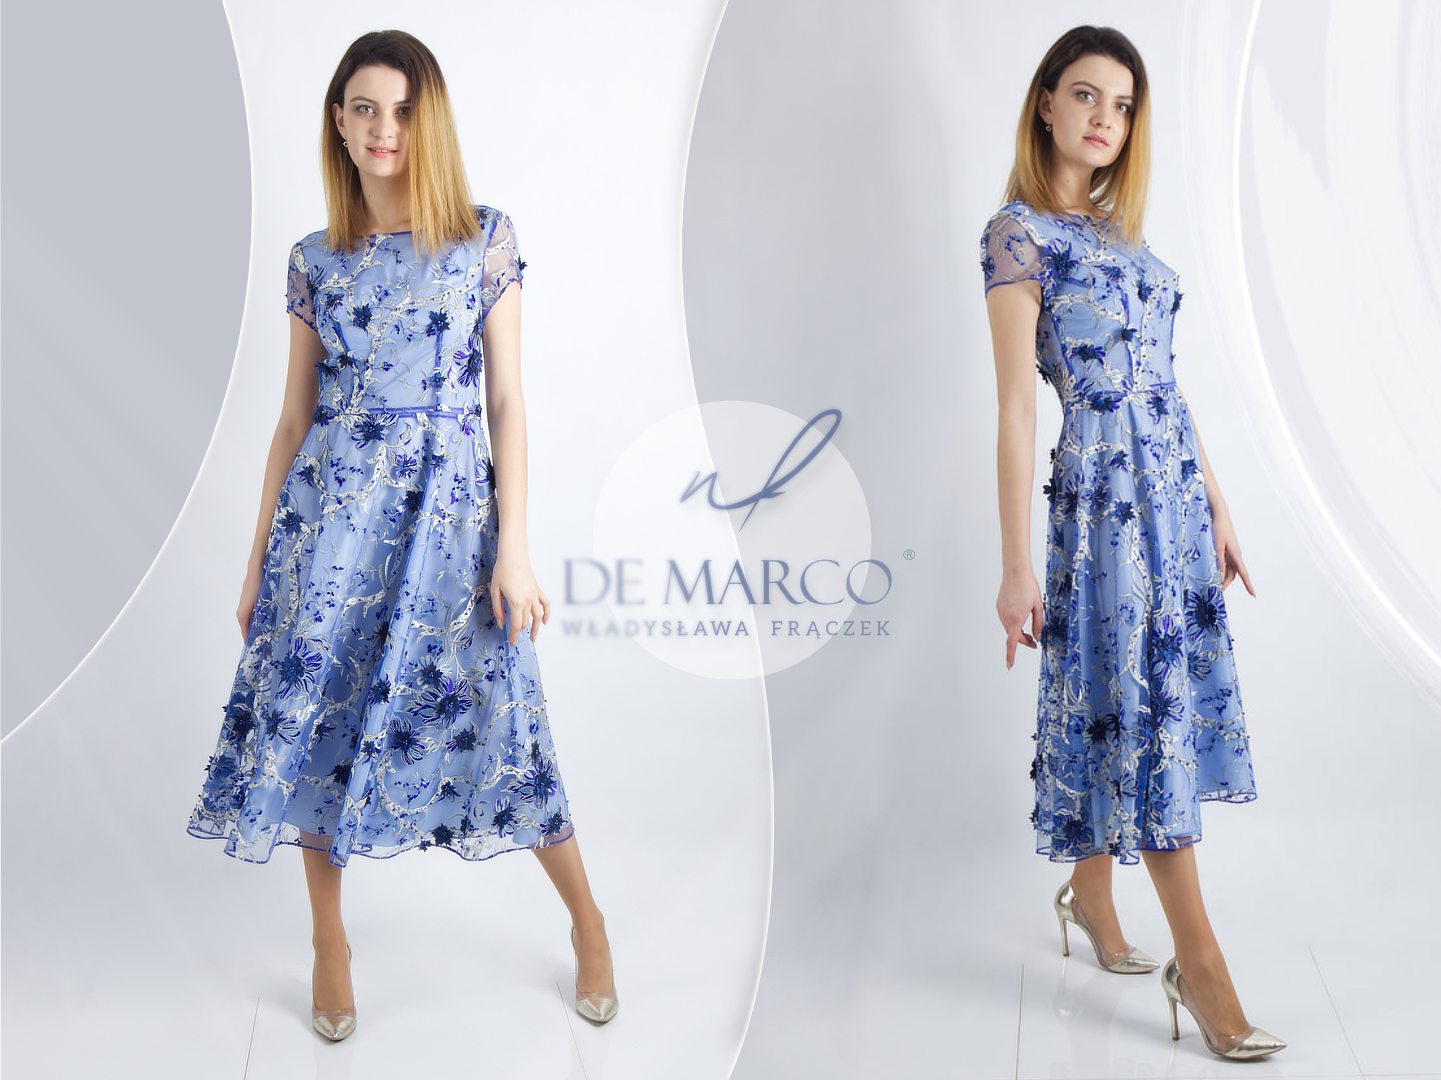 eleganckie sukienki na wesele dla mamy sklep De Marco. Modne sukienki w kwiatki dla mamy i teściowej